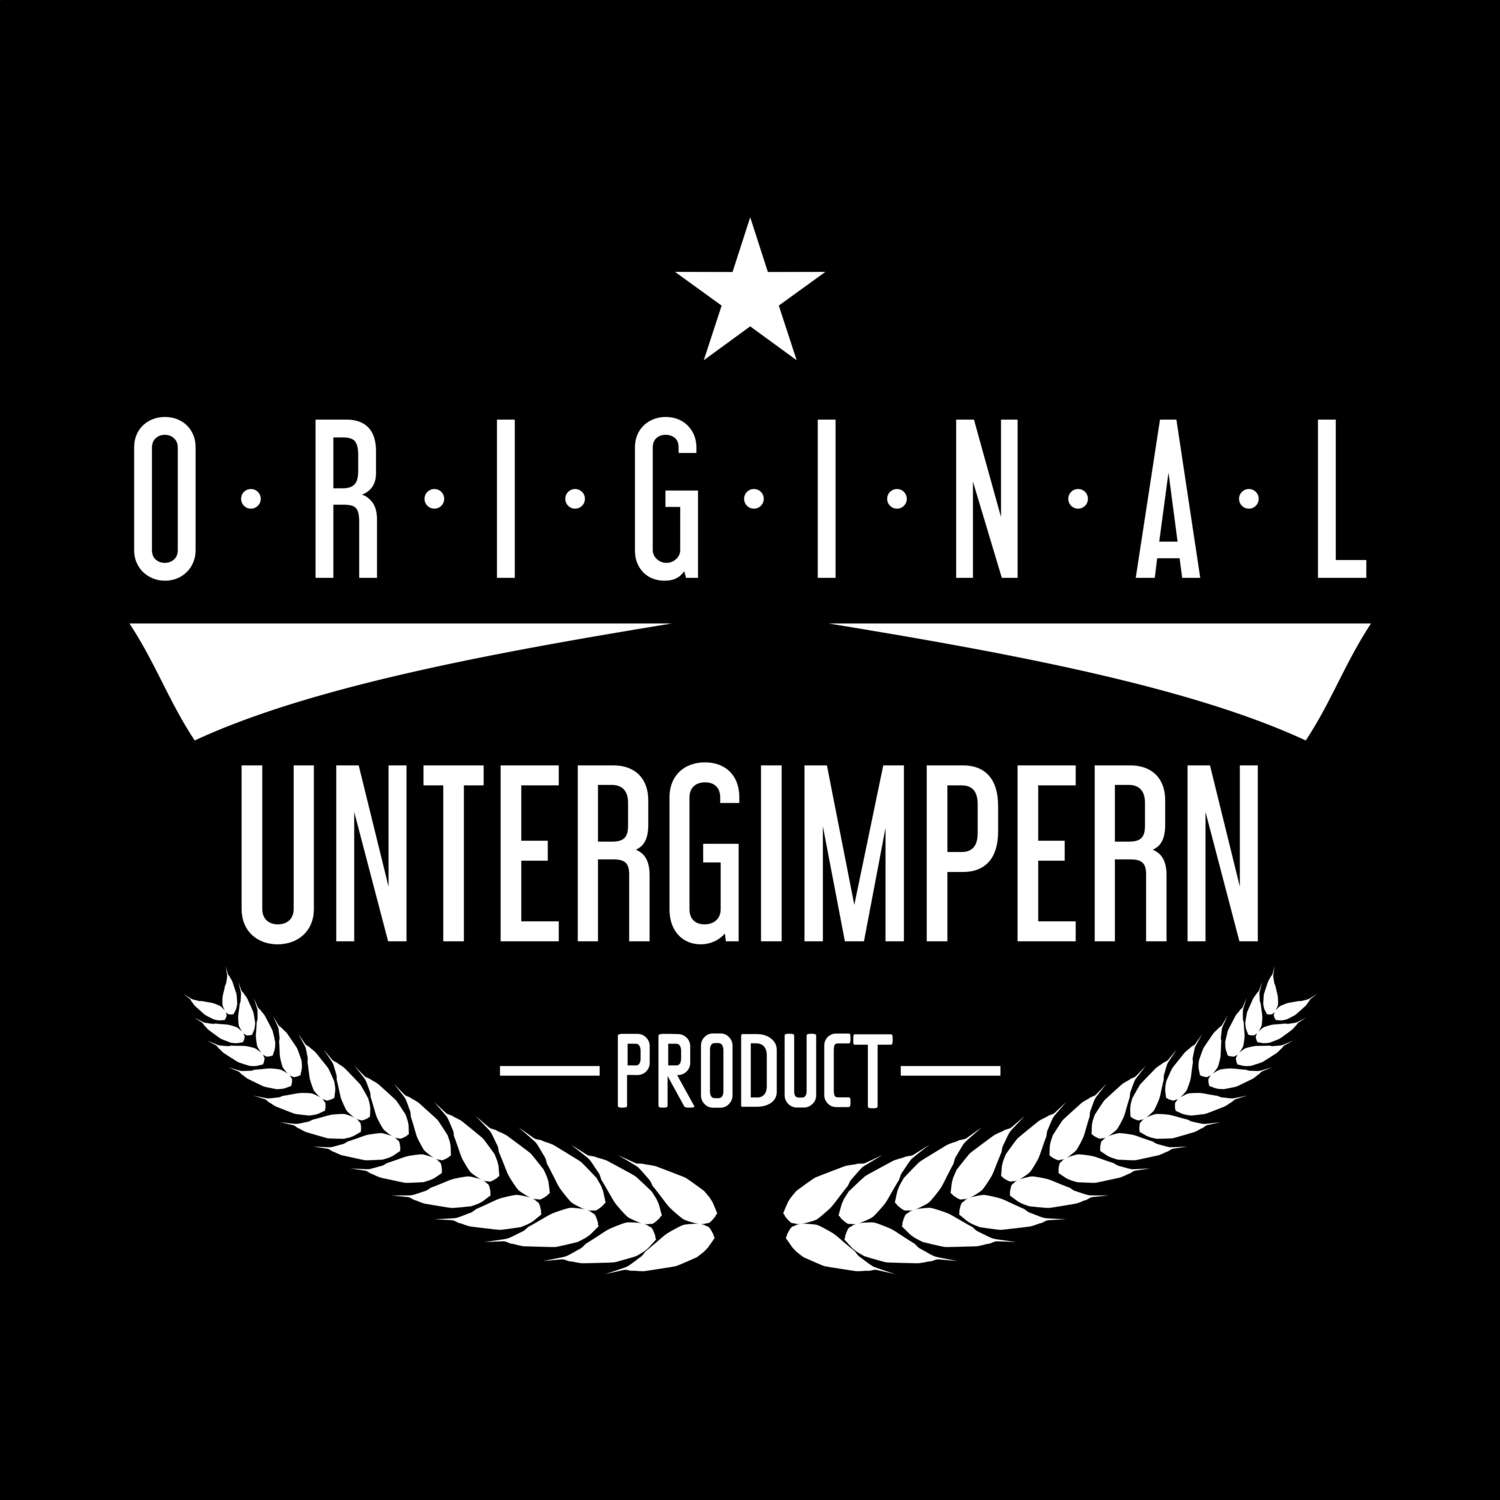 Untergimpern T-Shirt »Original Product«